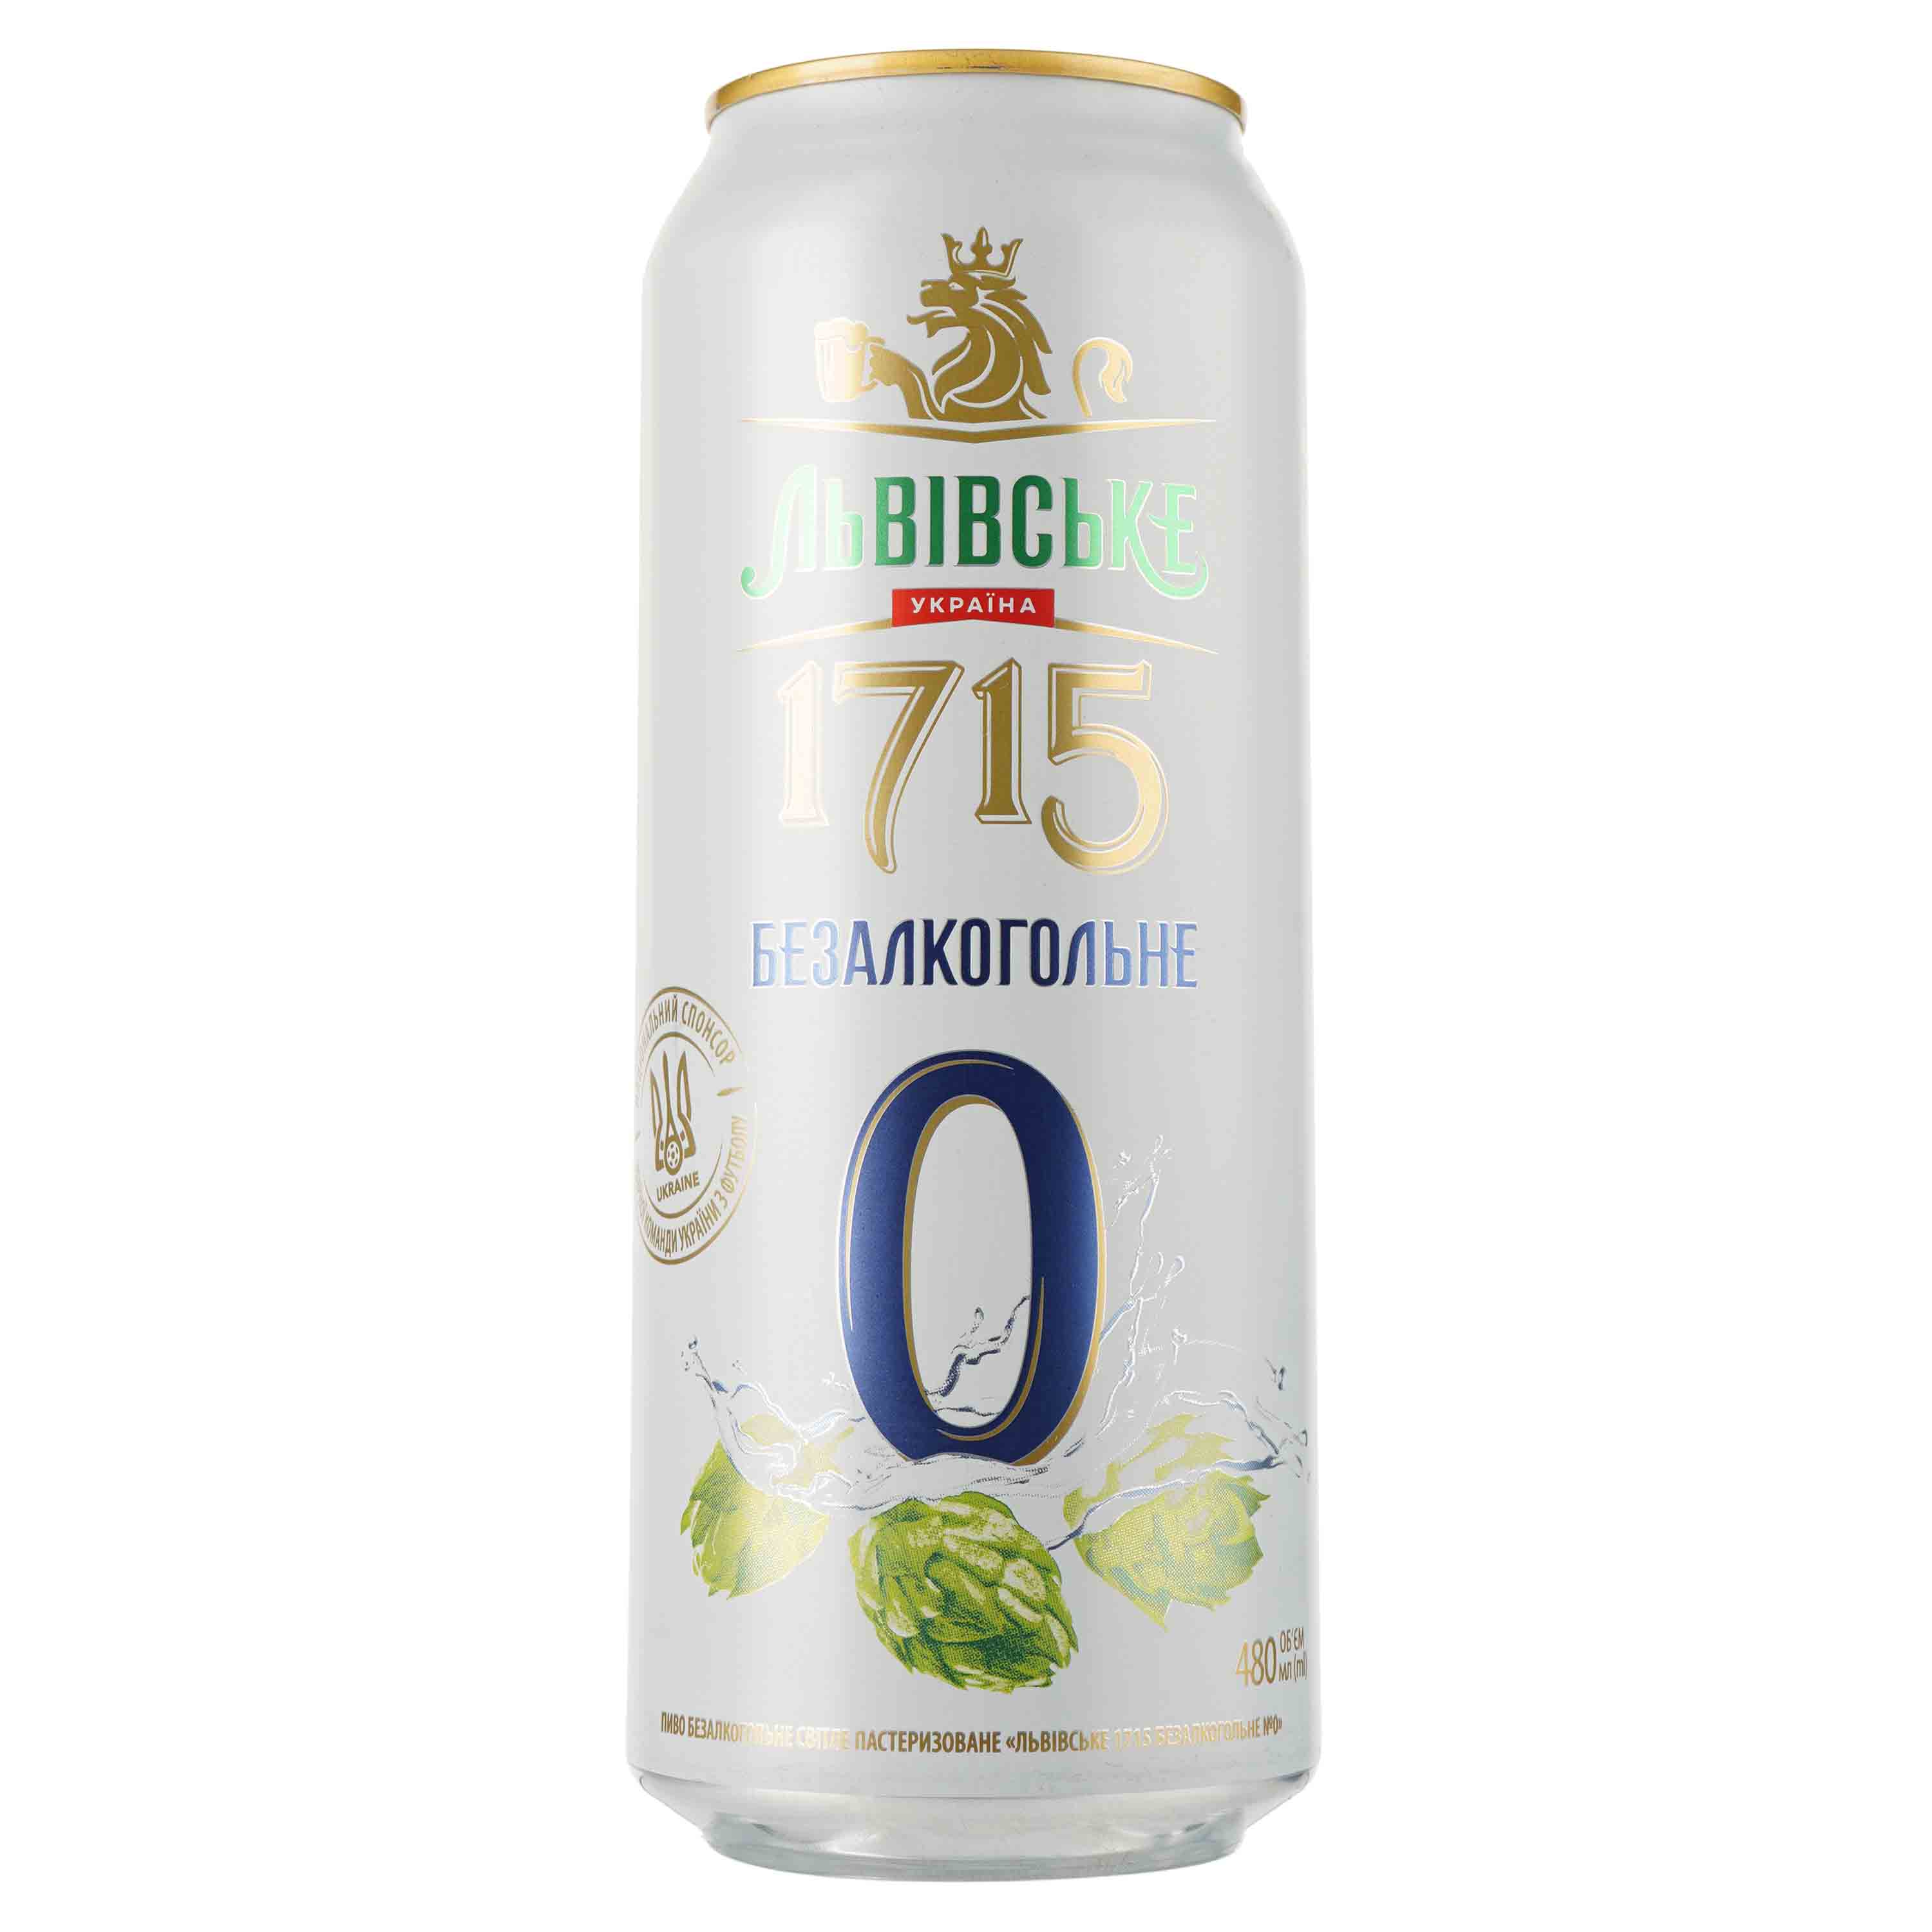 Пиво безалкогольное Львівське 1715, светлое, фильтрованное, 0,5%, ж/б, 0,48 л (909341) - фото 1